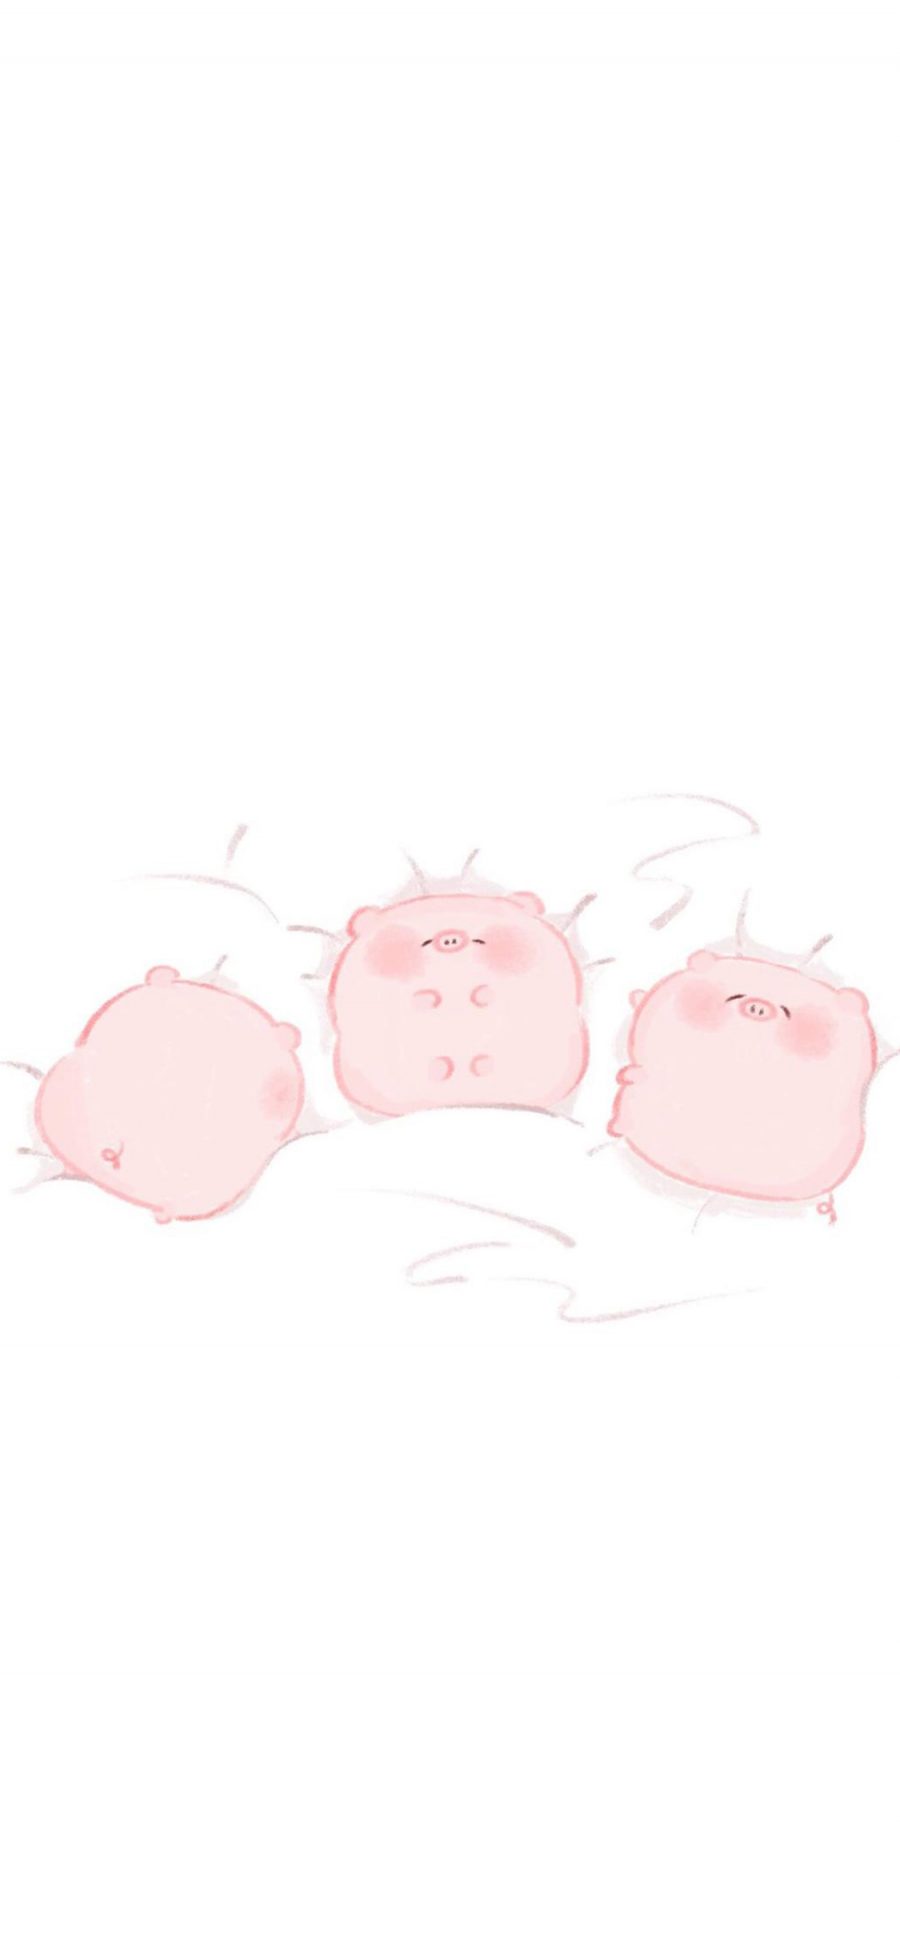 [2436×1125]卡通 猪猪 粉色 可爱 苹果手机动漫壁纸图片